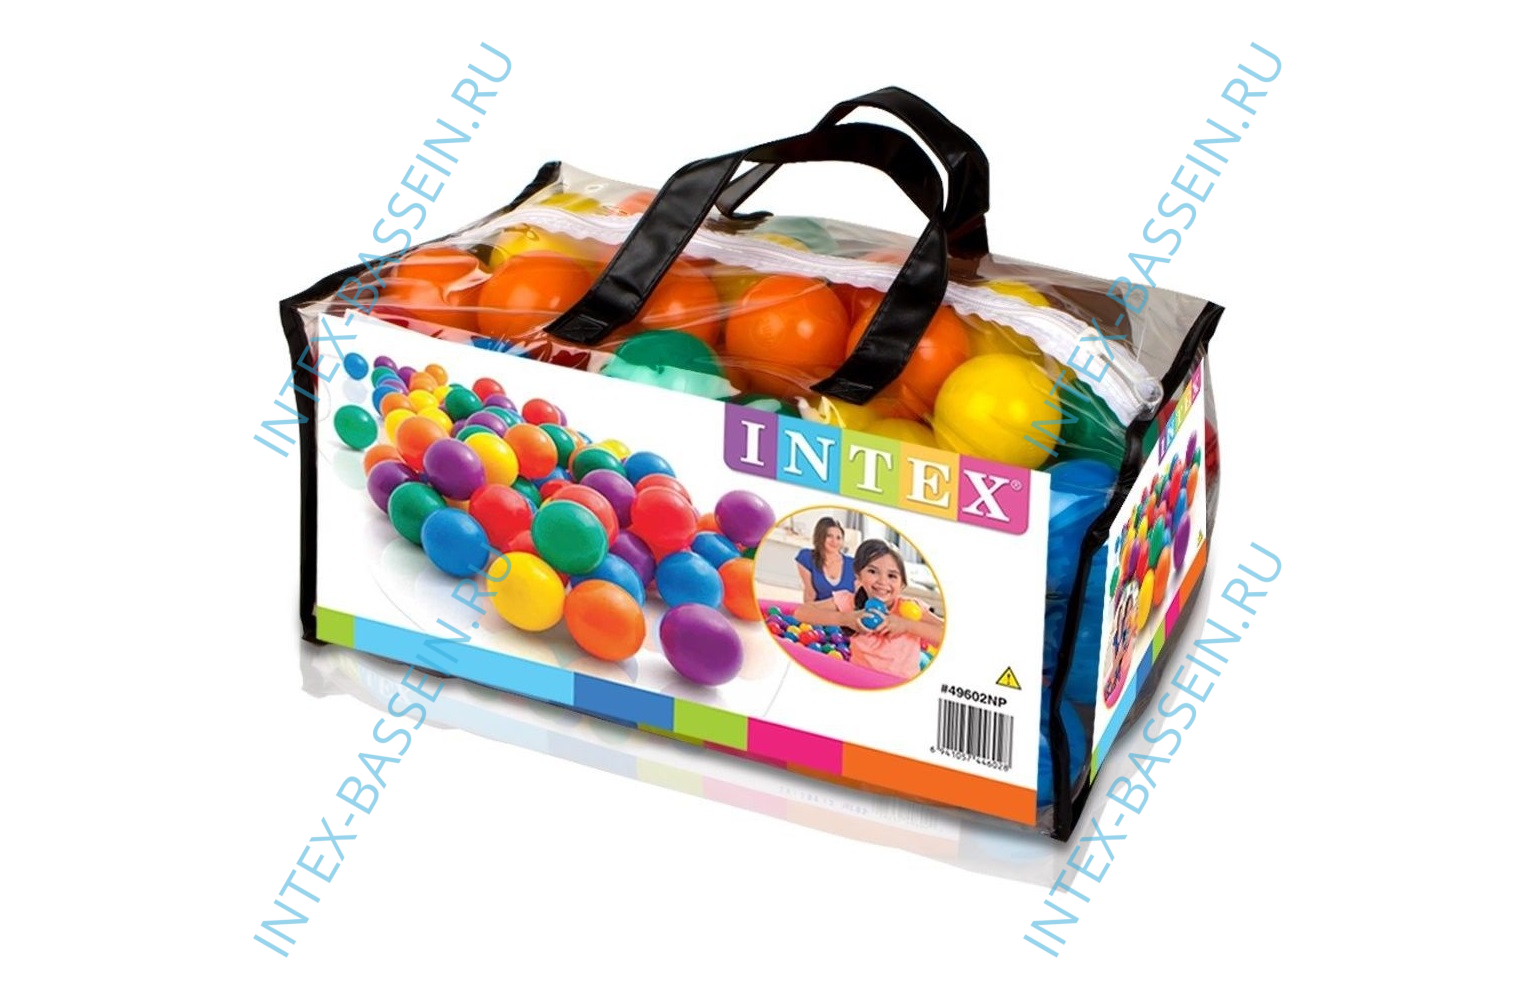 Пластиковые мячи INTEX для игр 6.5 см, артикул 49602